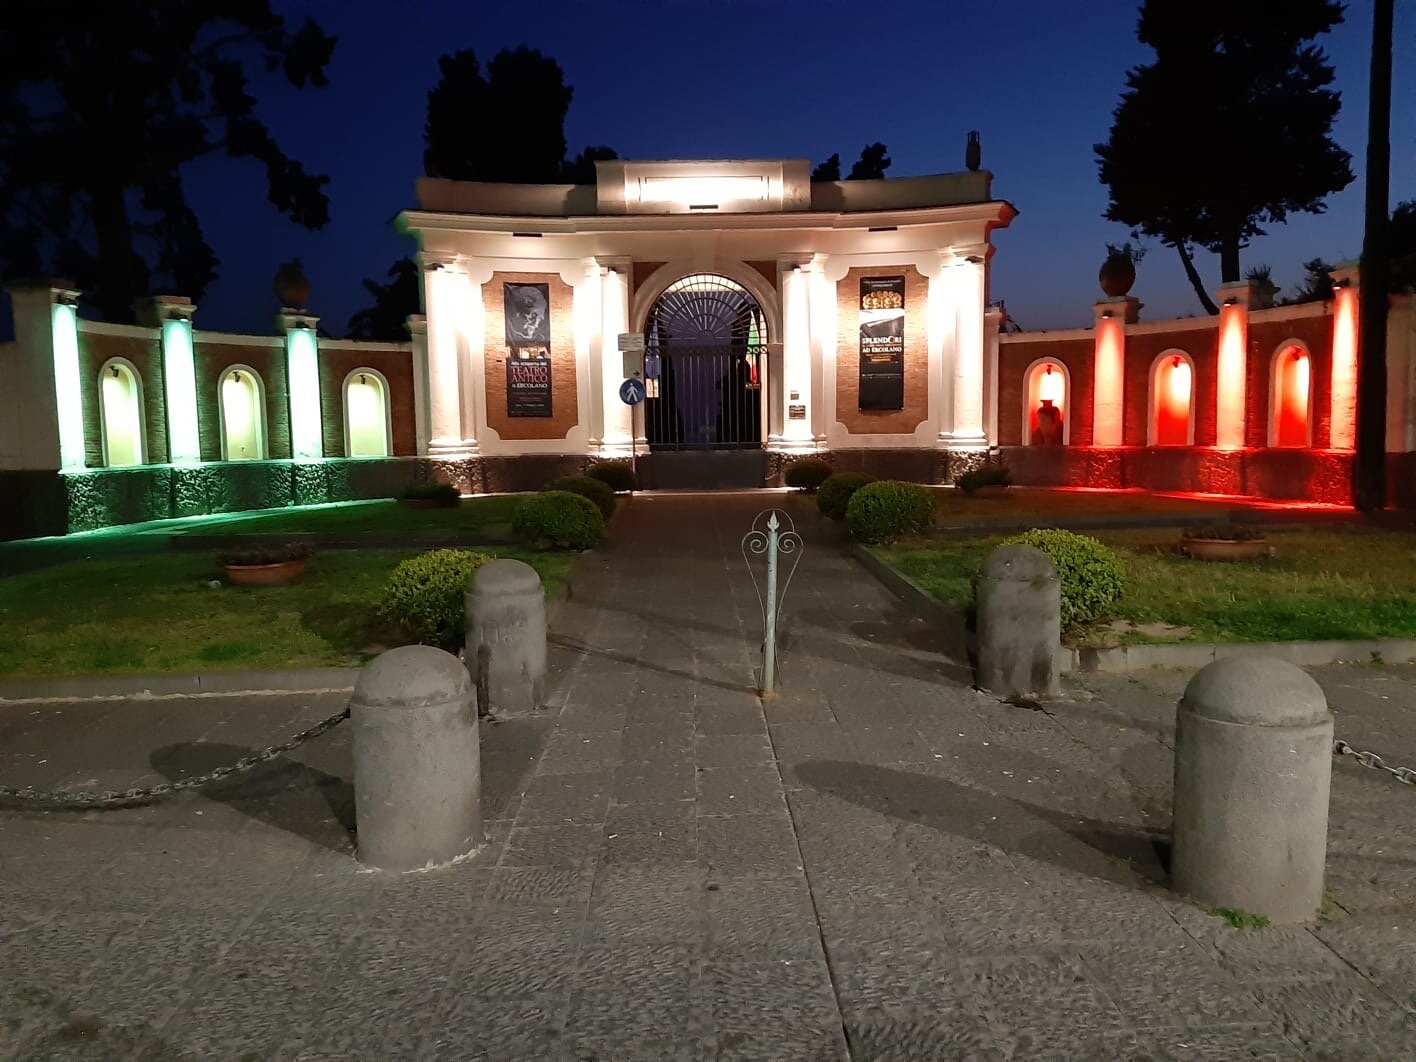 Il tricolore illumina la facciata di ingresso del Parco Archeologico di Ercolano